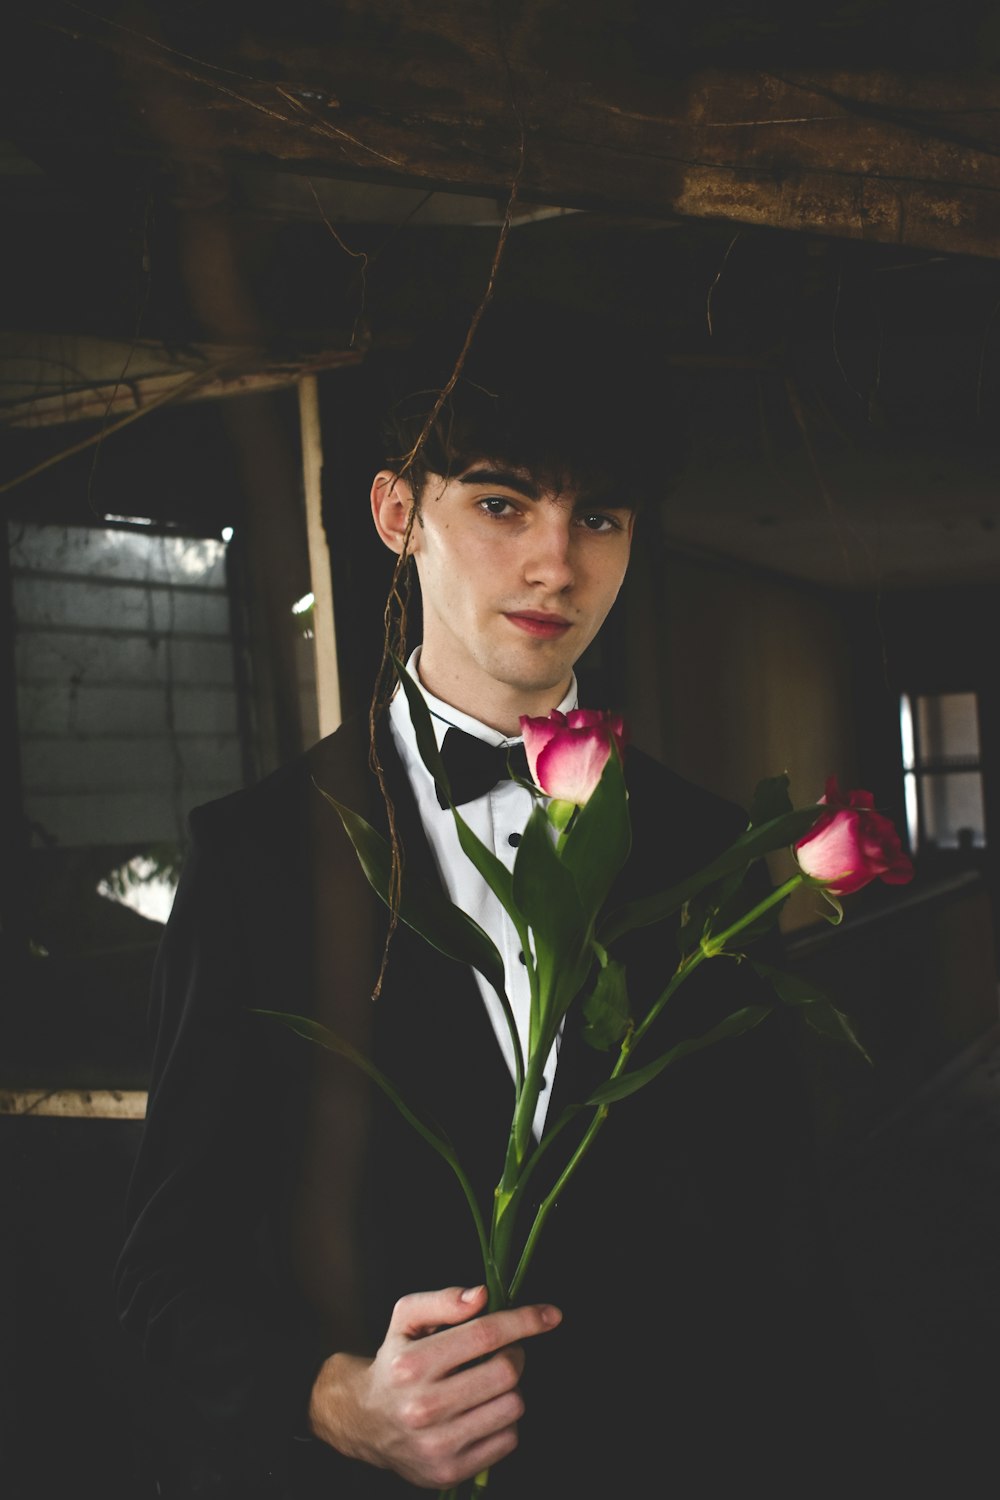 hombre vestido con traje formal blanco y negro sosteniendo dos rosas rojas